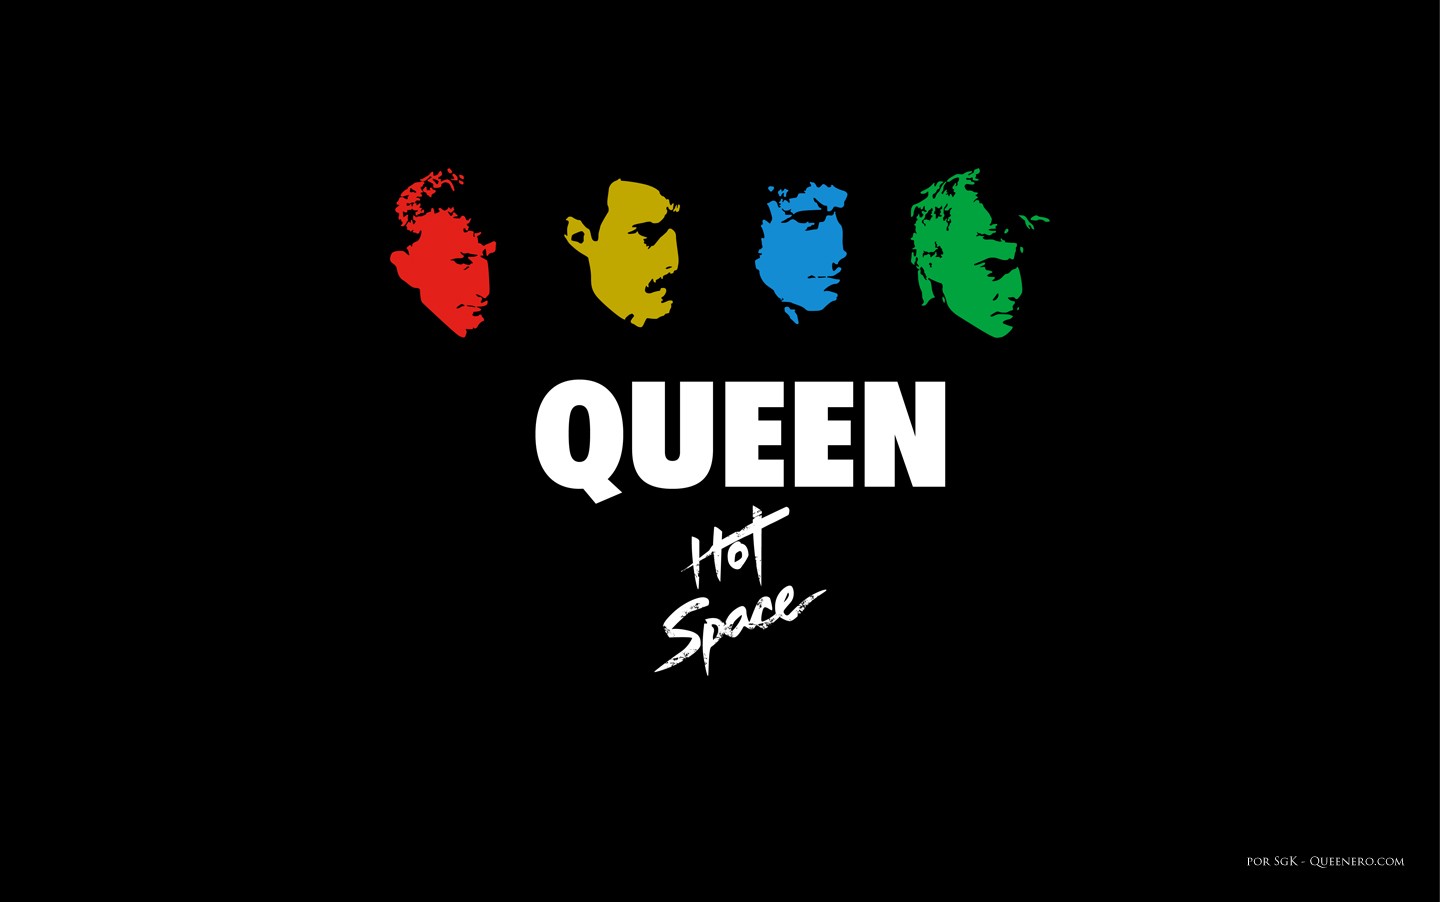 Queen Logo Wallpapers